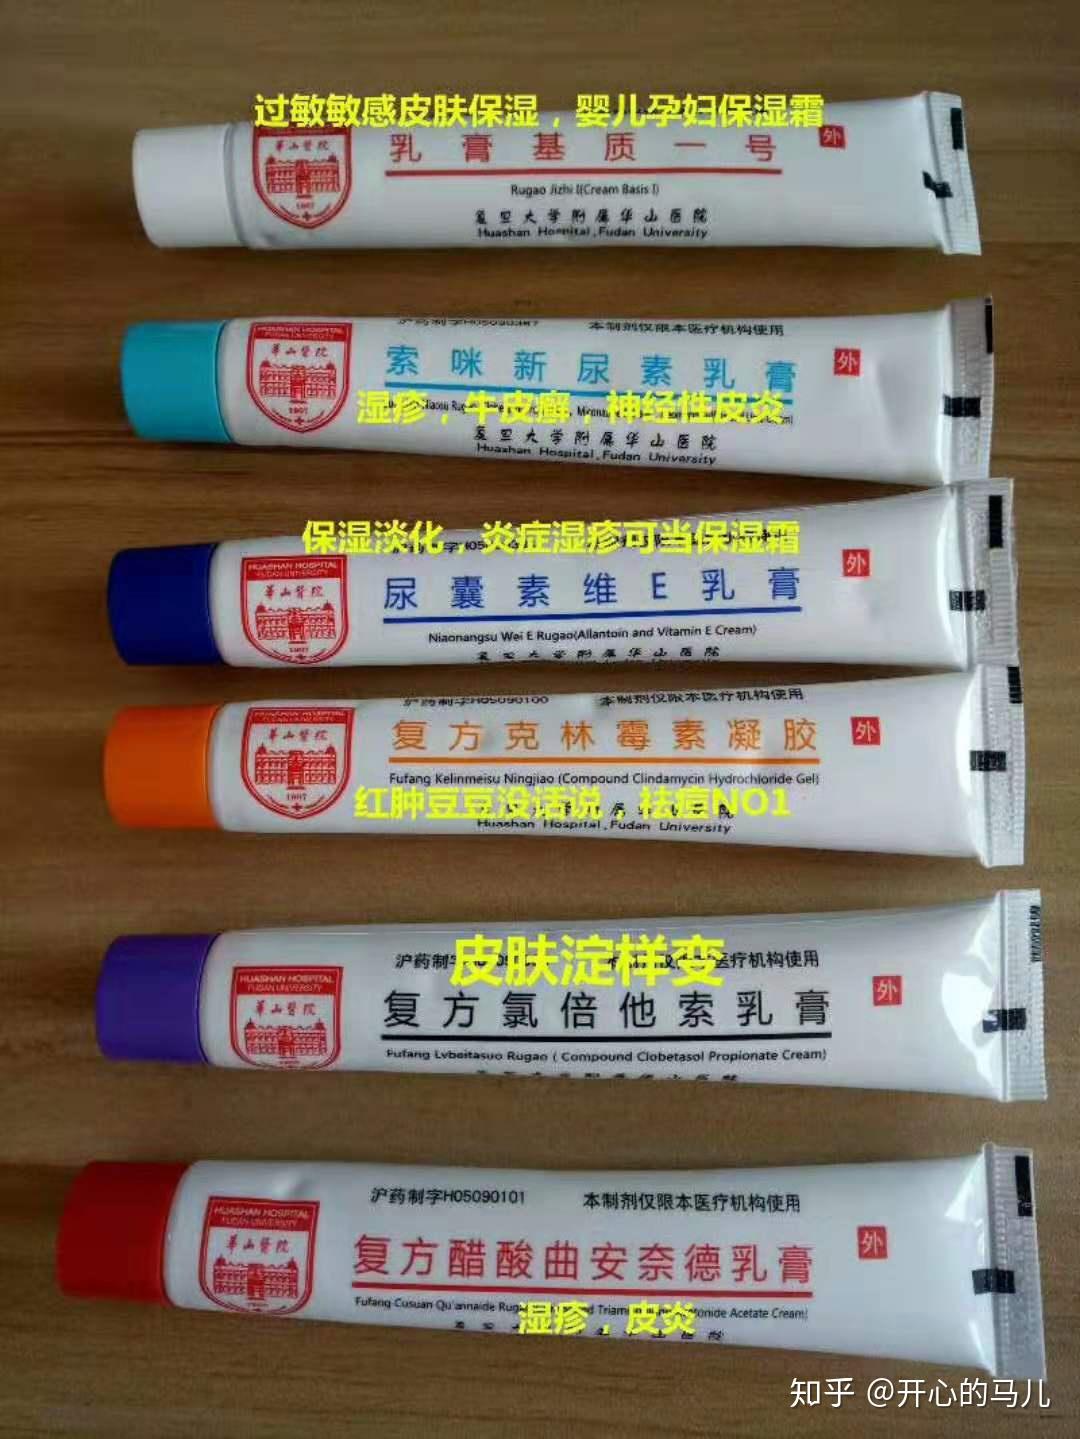 上海华山医院的复方克林霉素凝胶（抗脂洁尔）买到了！ - 上海医院跑腿代购